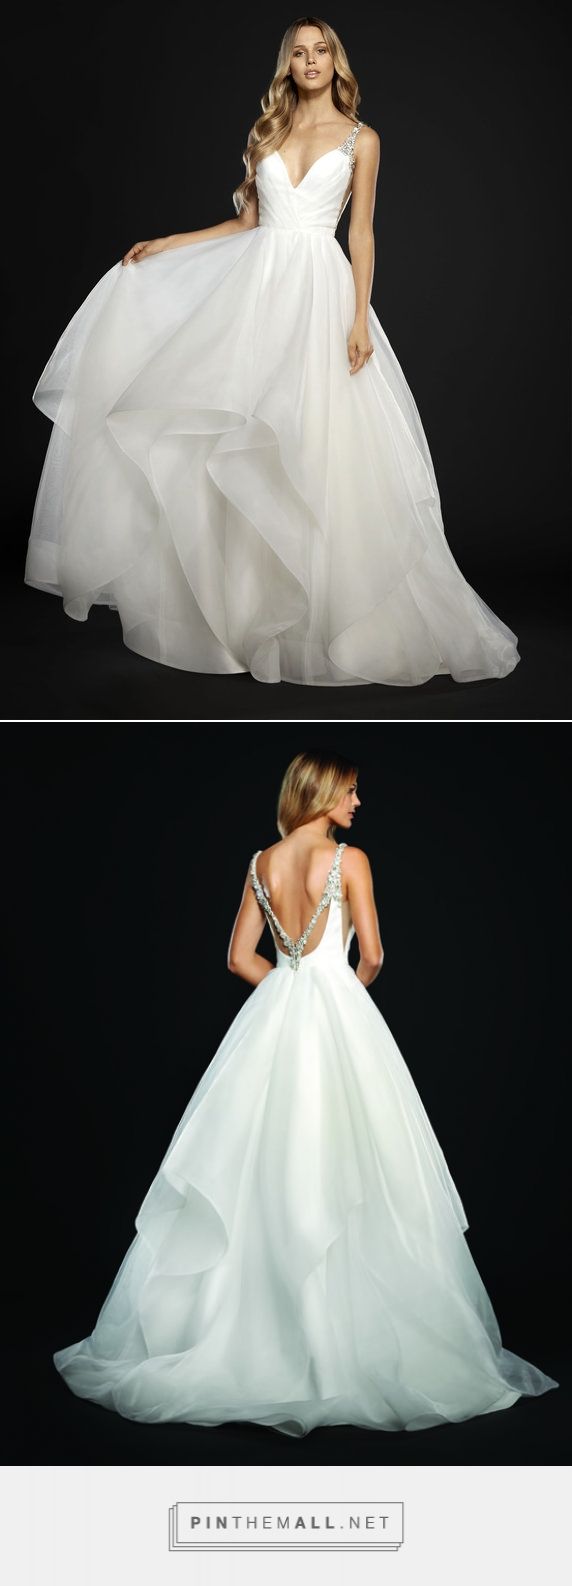 زفاف - Wedding Dresses